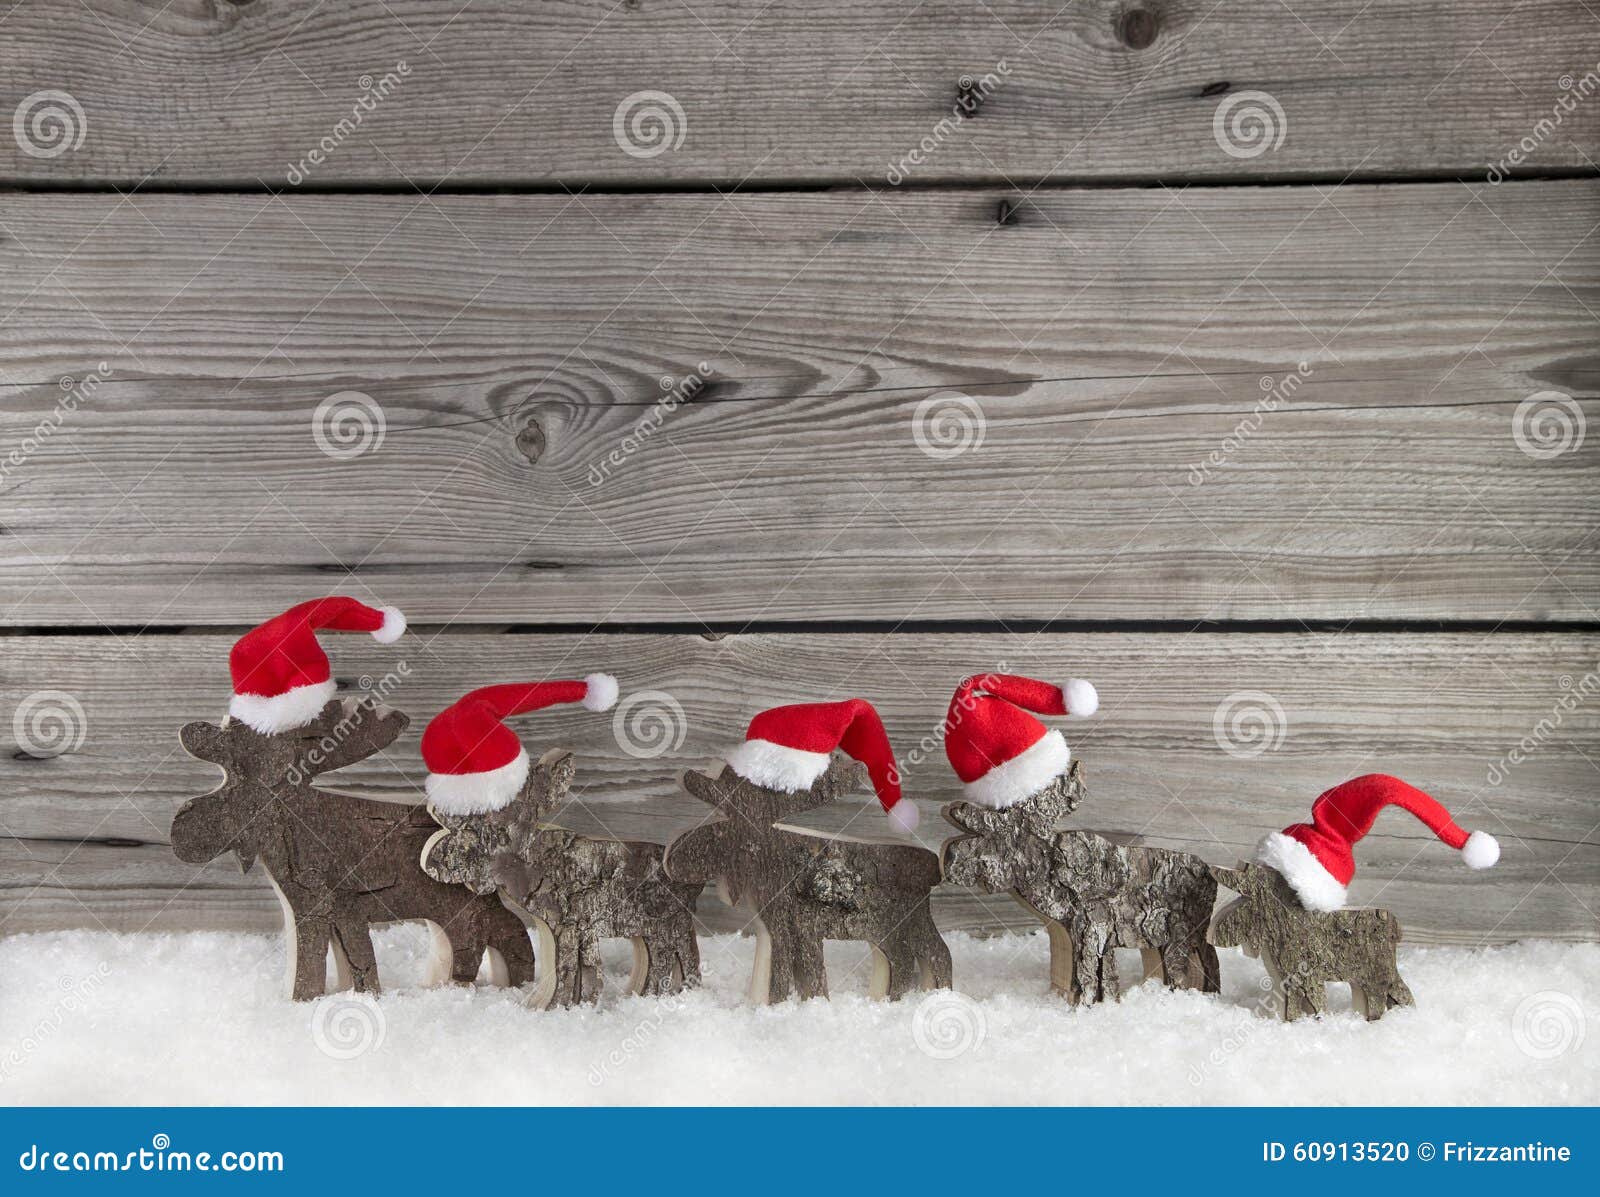 Một không gian Giáng sinh ấm áp và đầy màu sắc đang chờ đón bạn với nền gỗ độc đáo cùng nhóm ông già Noel đáng yêu. Hãy nhanh chóng nhấp chuột vào hình ảnh để tận hưởng không khí đón Giáng sinh nhé!